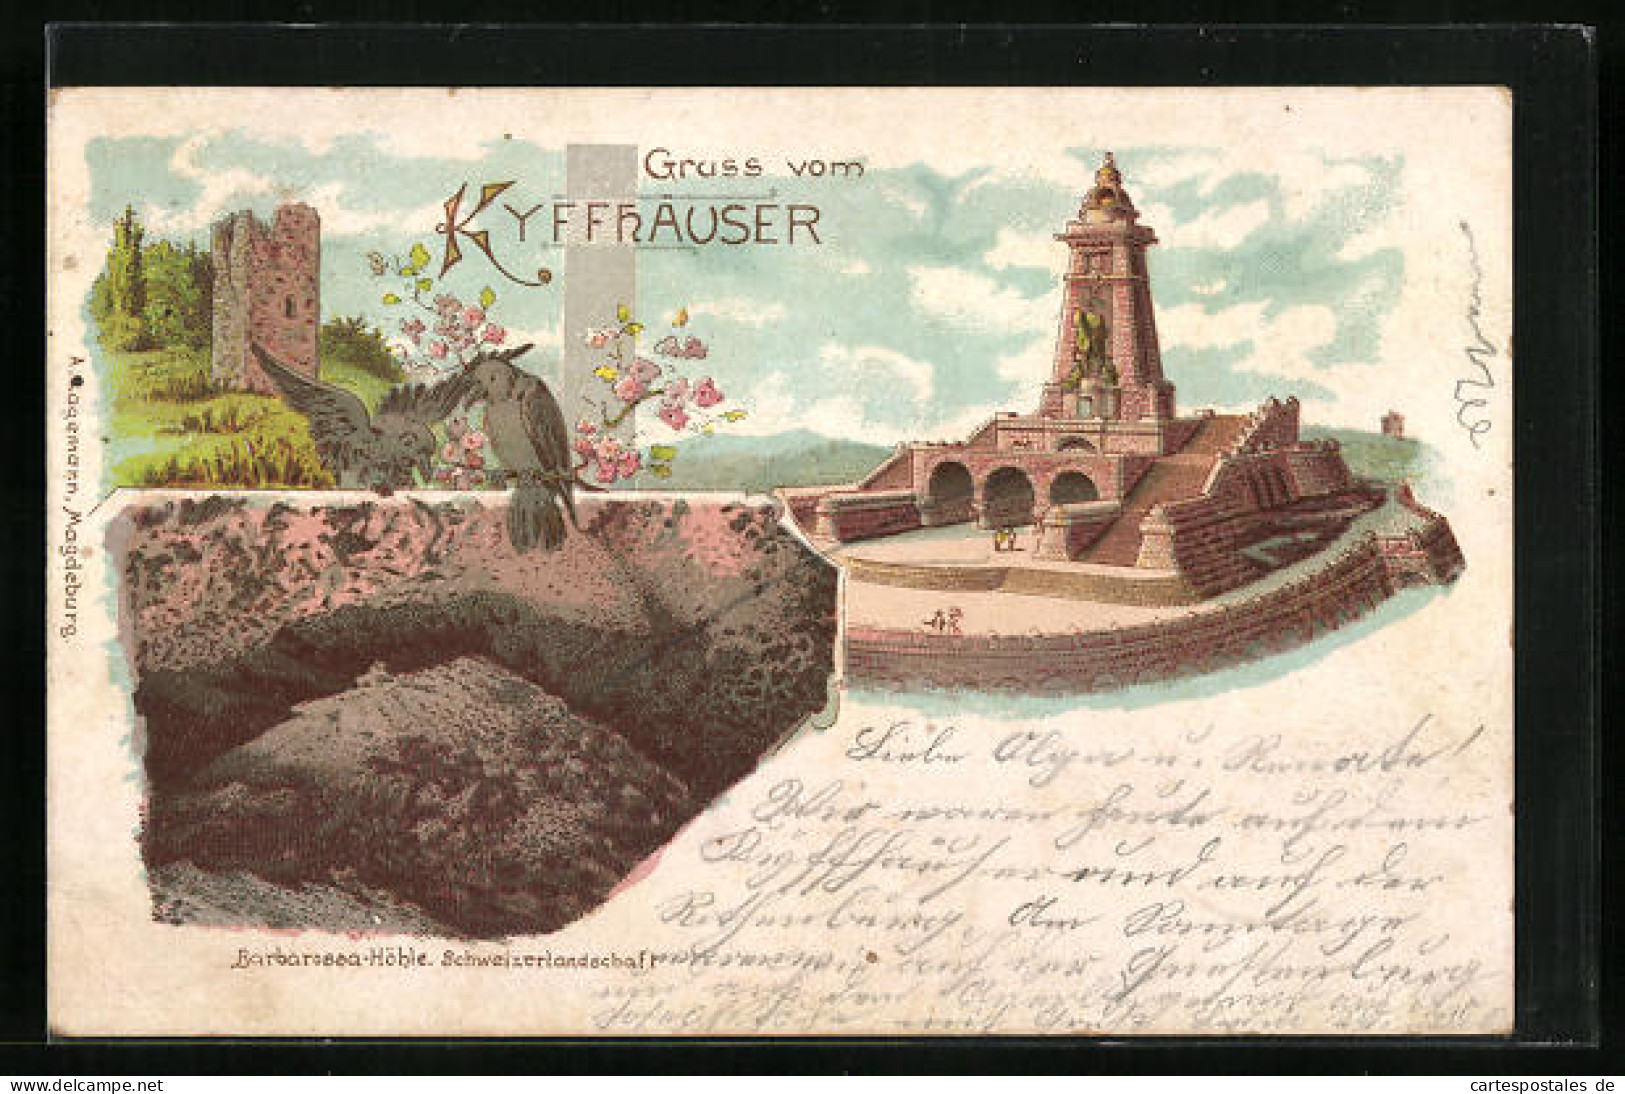 Lithographie Kyffhäuser, Kyffhäuserdenkmal, Turm, Barbarossahöhle Schweizerlandschaft  - Kyffhaeuser